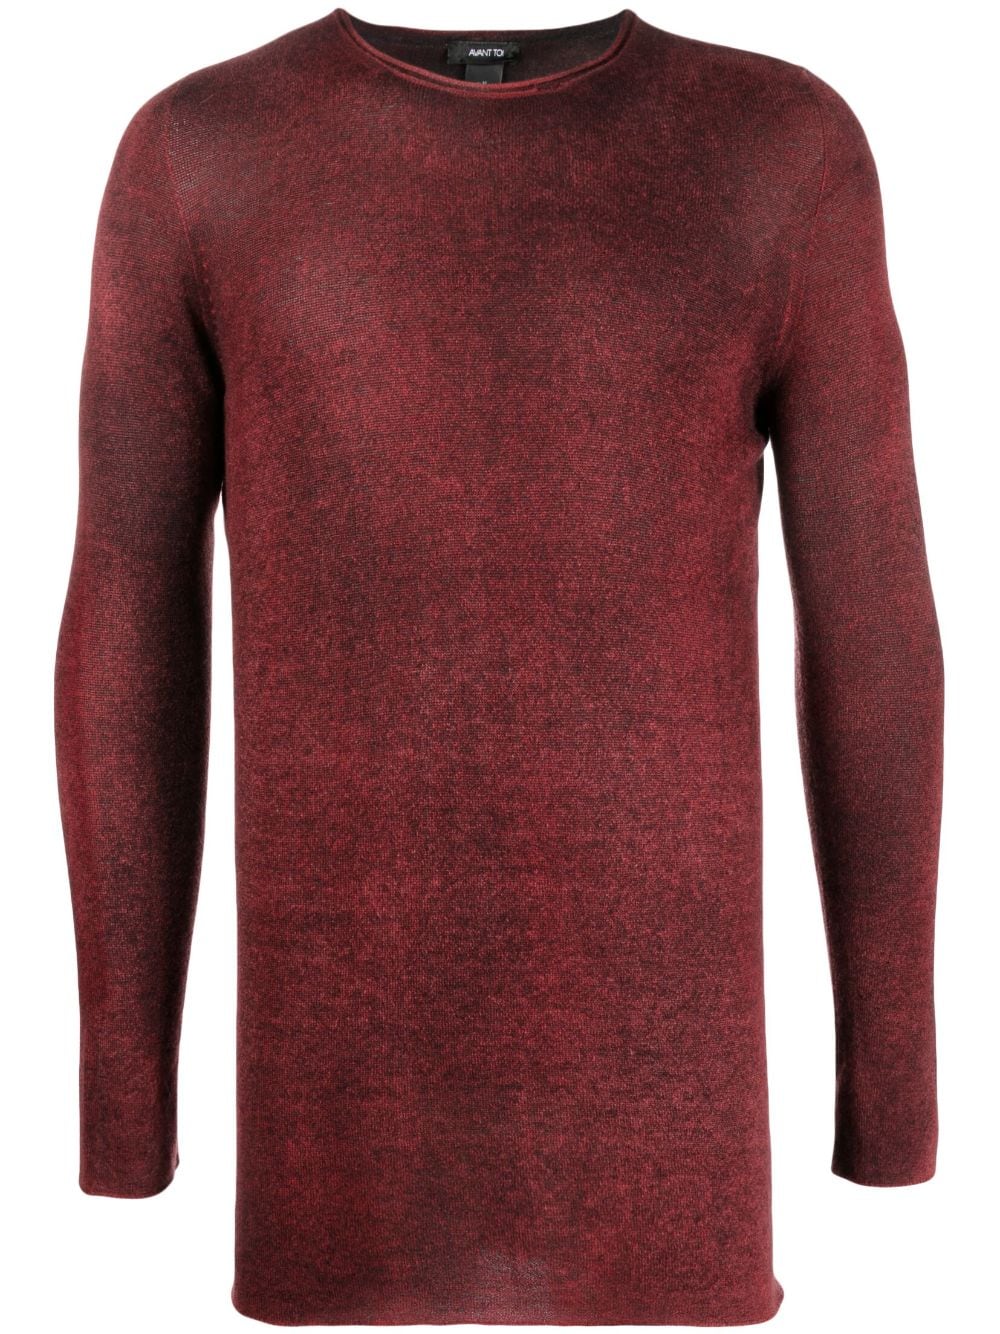 fine-knit cashmere top